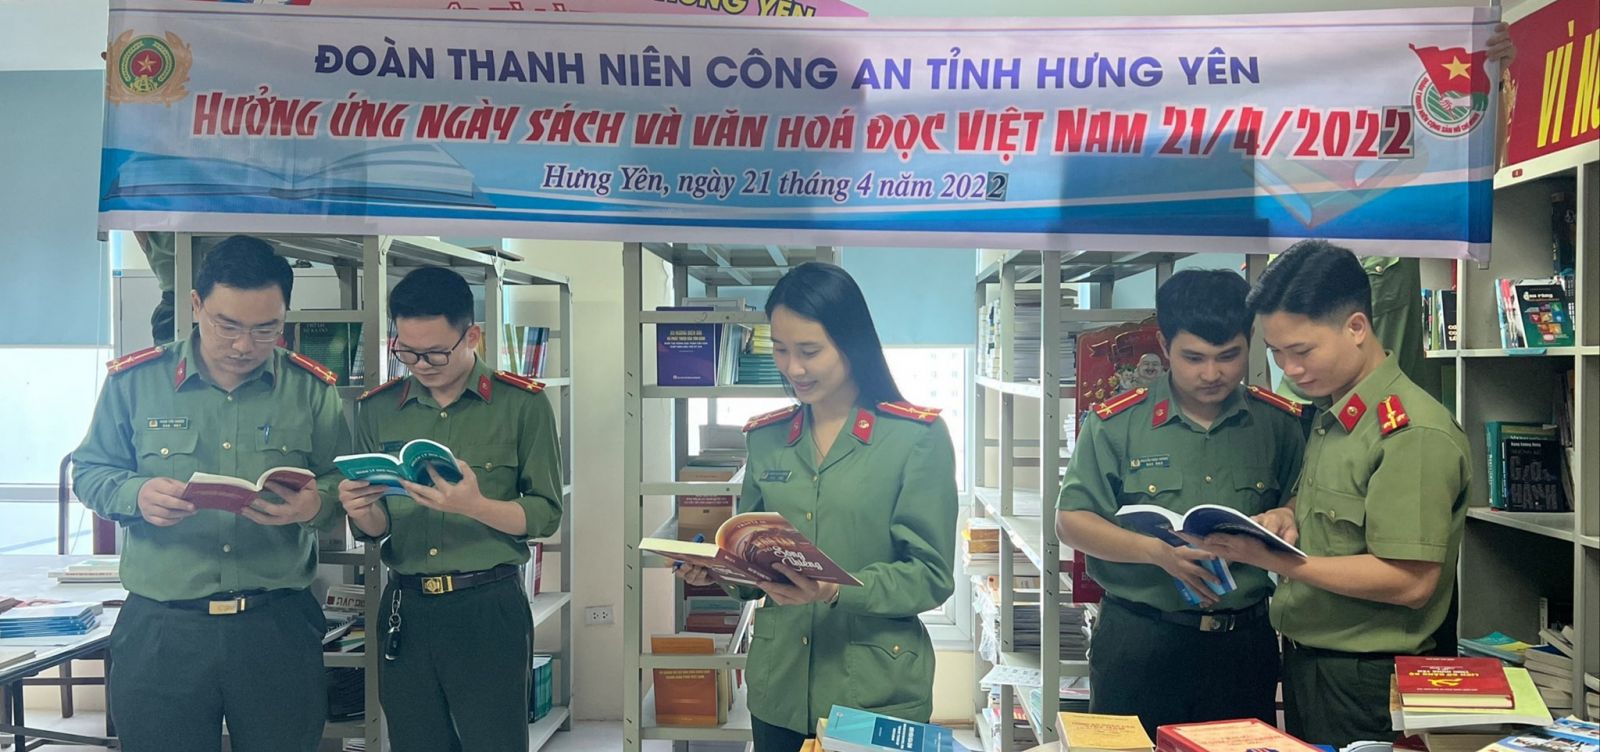 Tuổi trẻ Công an tỉnh Hưng Yên hưởng ứng ngày sách và văn hóa đọc Việt Nam năm 2022